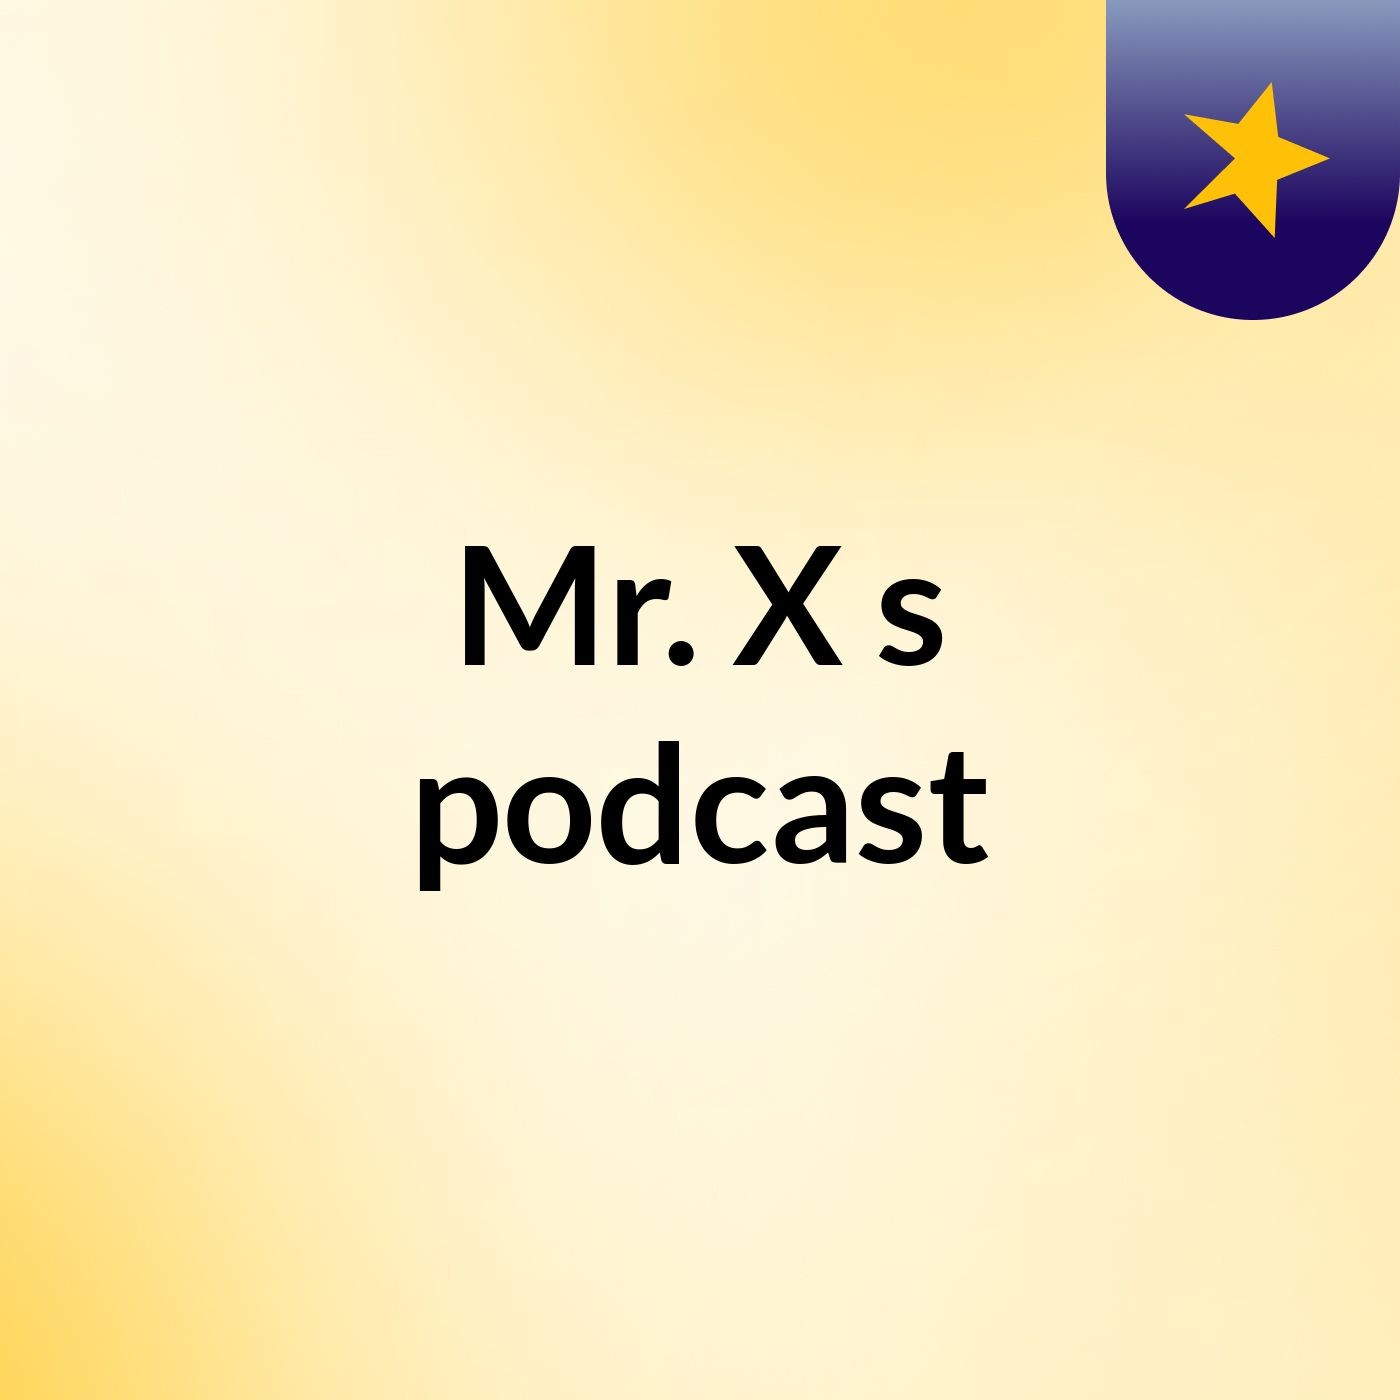 Mr. X's podcast